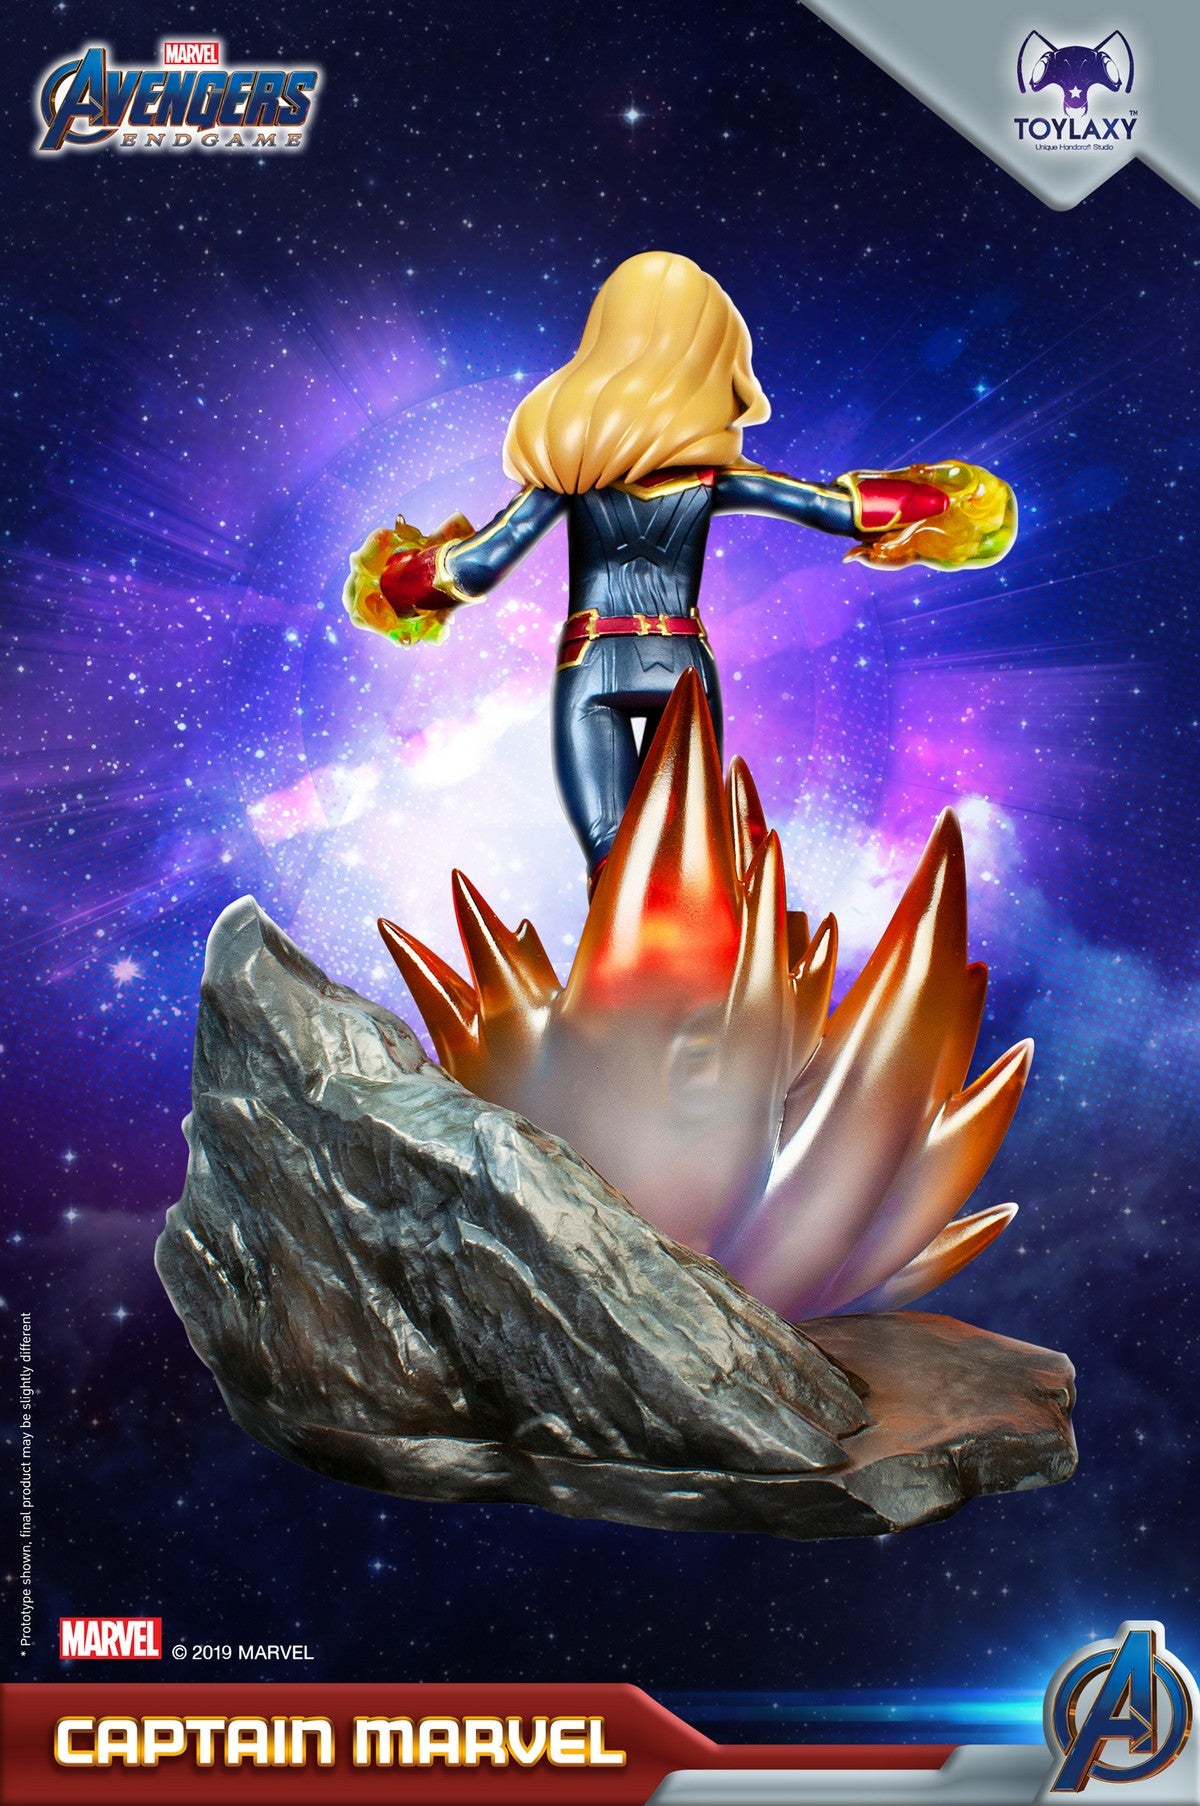 漫威復仇者聯盟：Marvel隊長正版模型手辦人偶玩具 Marvel's Avengers: Endgame Premium PVC Captain Marvel official figure toy wave 2  back